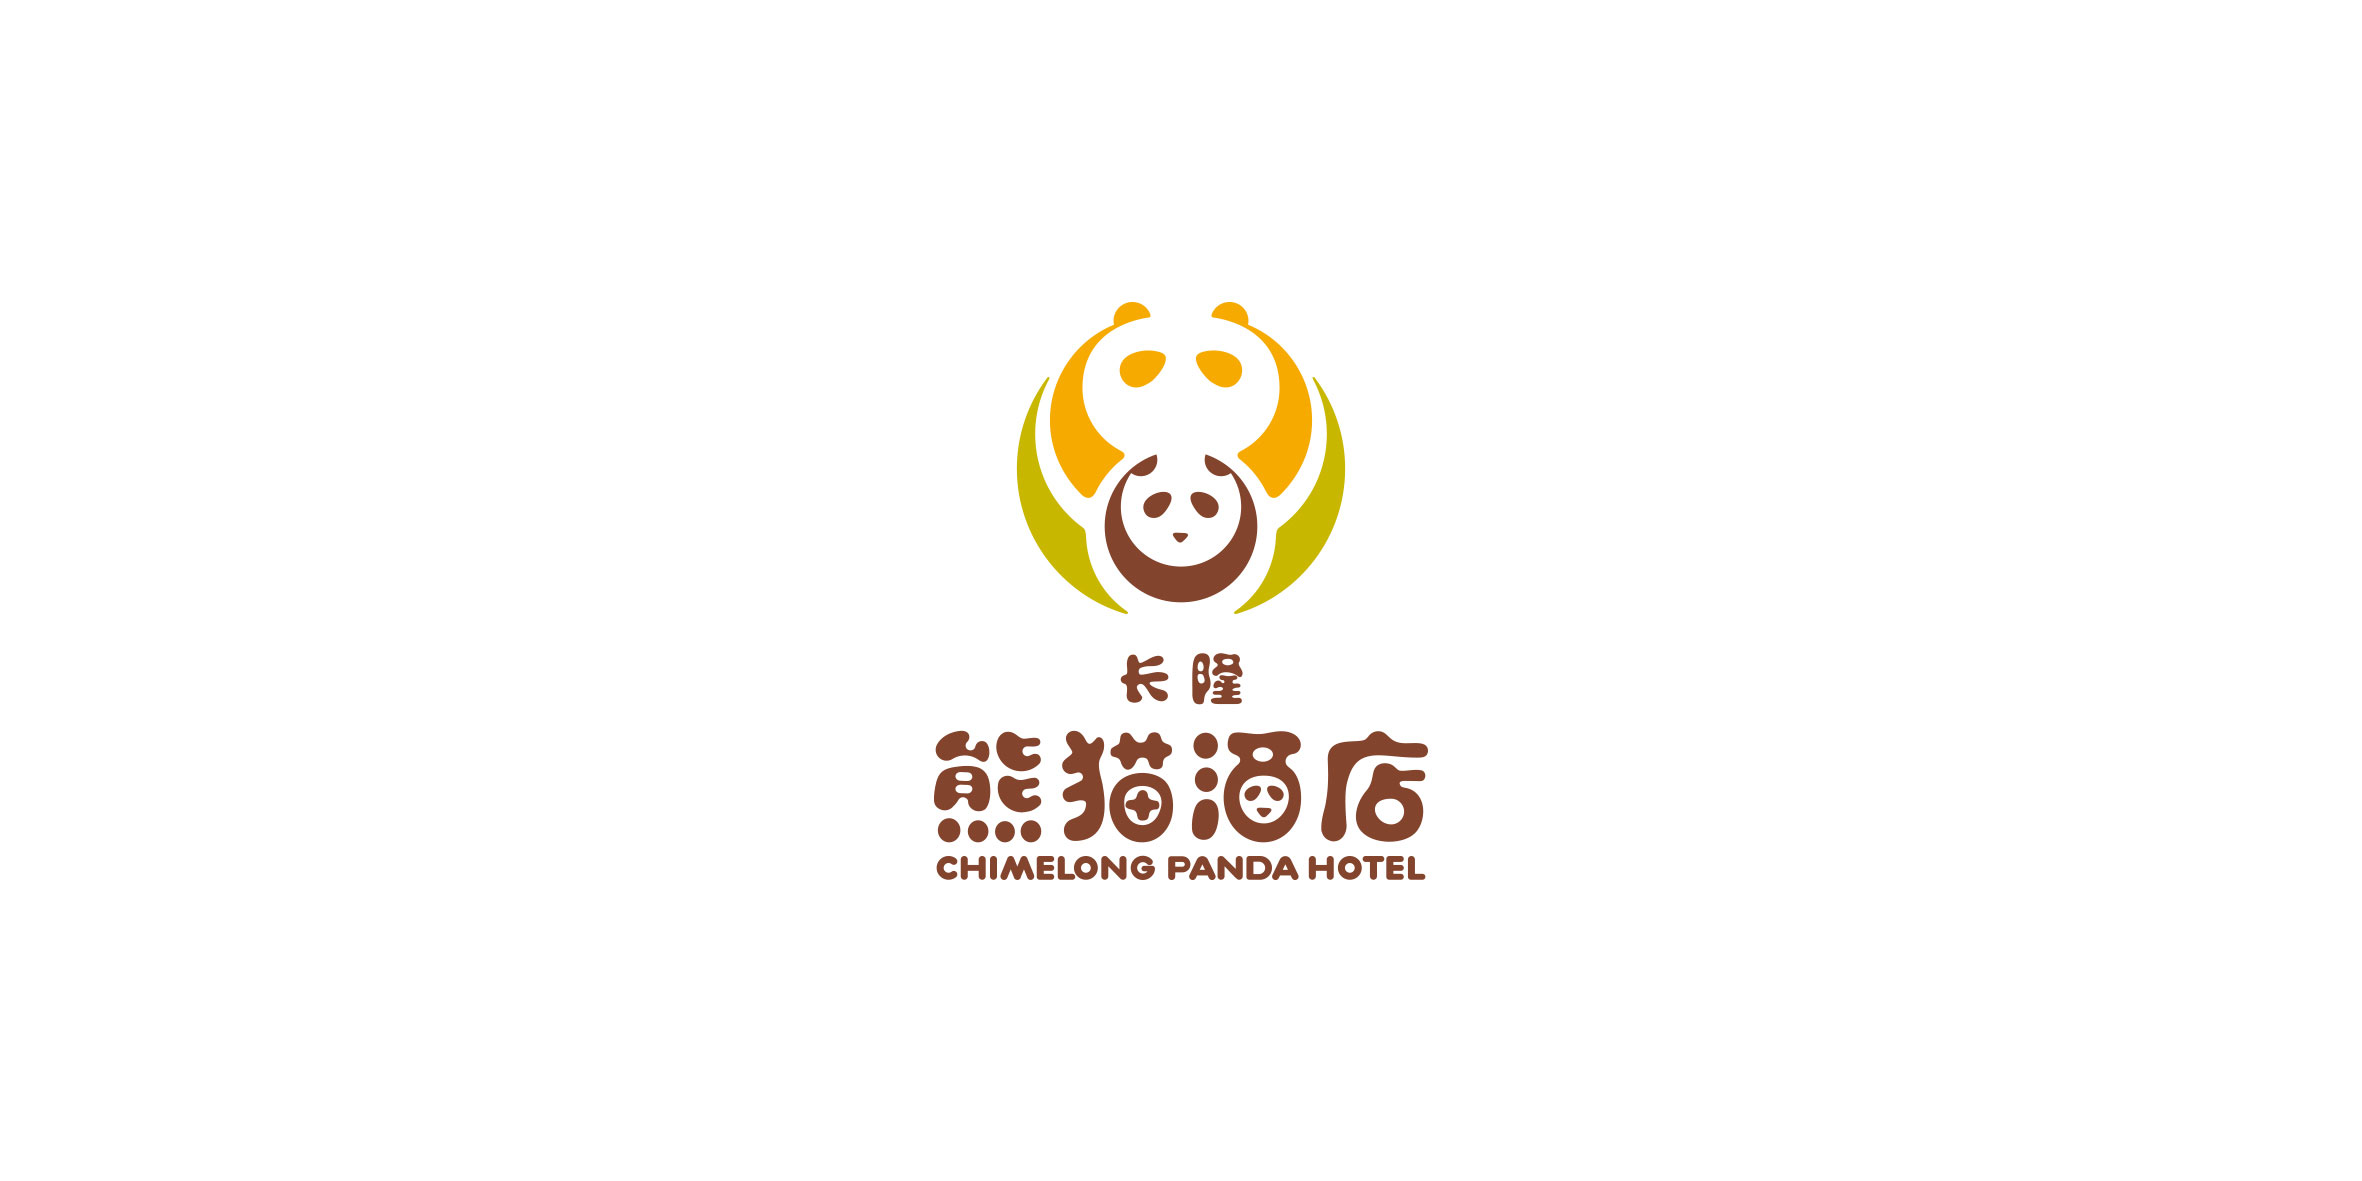 长隆logo野生动物世界图片